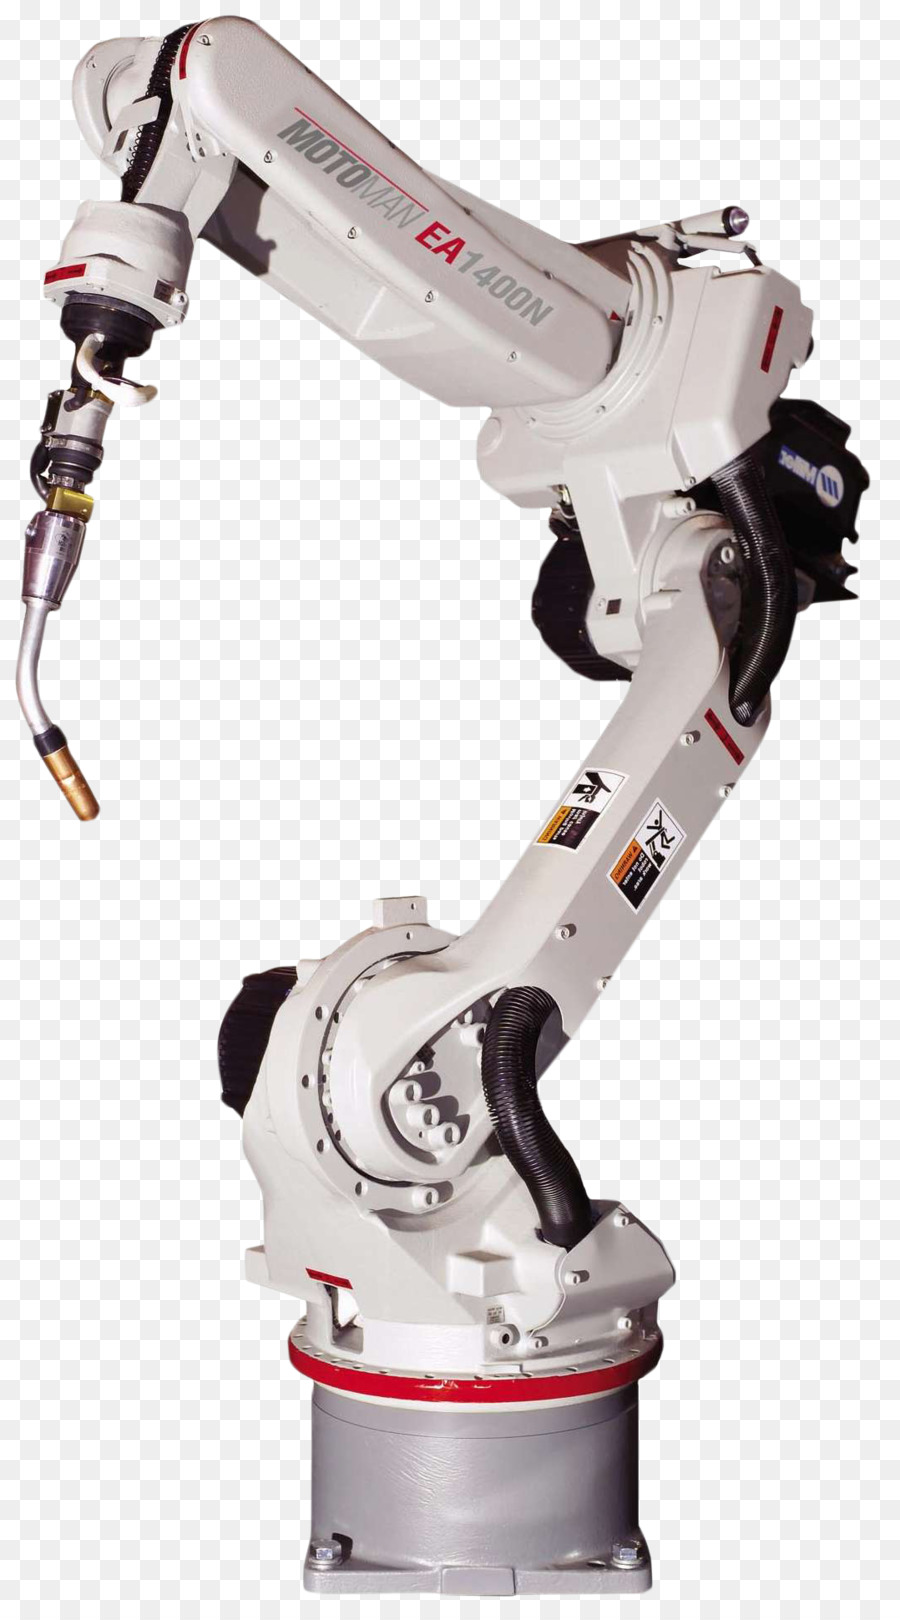 Automazione Robot Industria Elettronica per macchine - fanuc robot png industriale